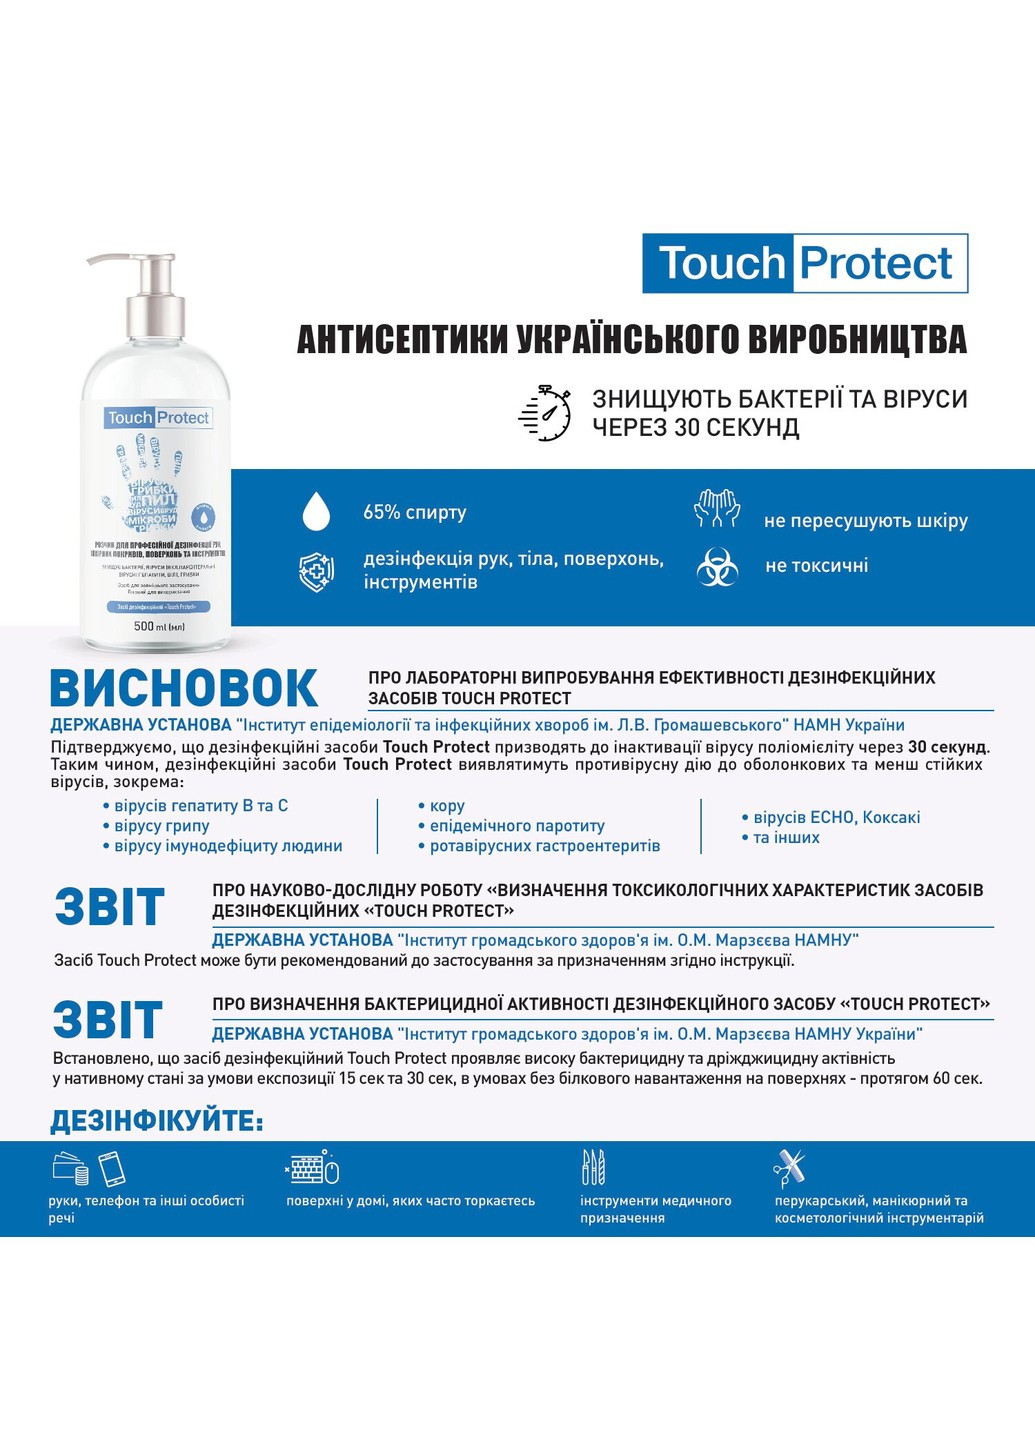 Антисептик раствор для дезинфекции рук, тела, поверхностей и инструментов 500 мл Touch Protect (255417760)